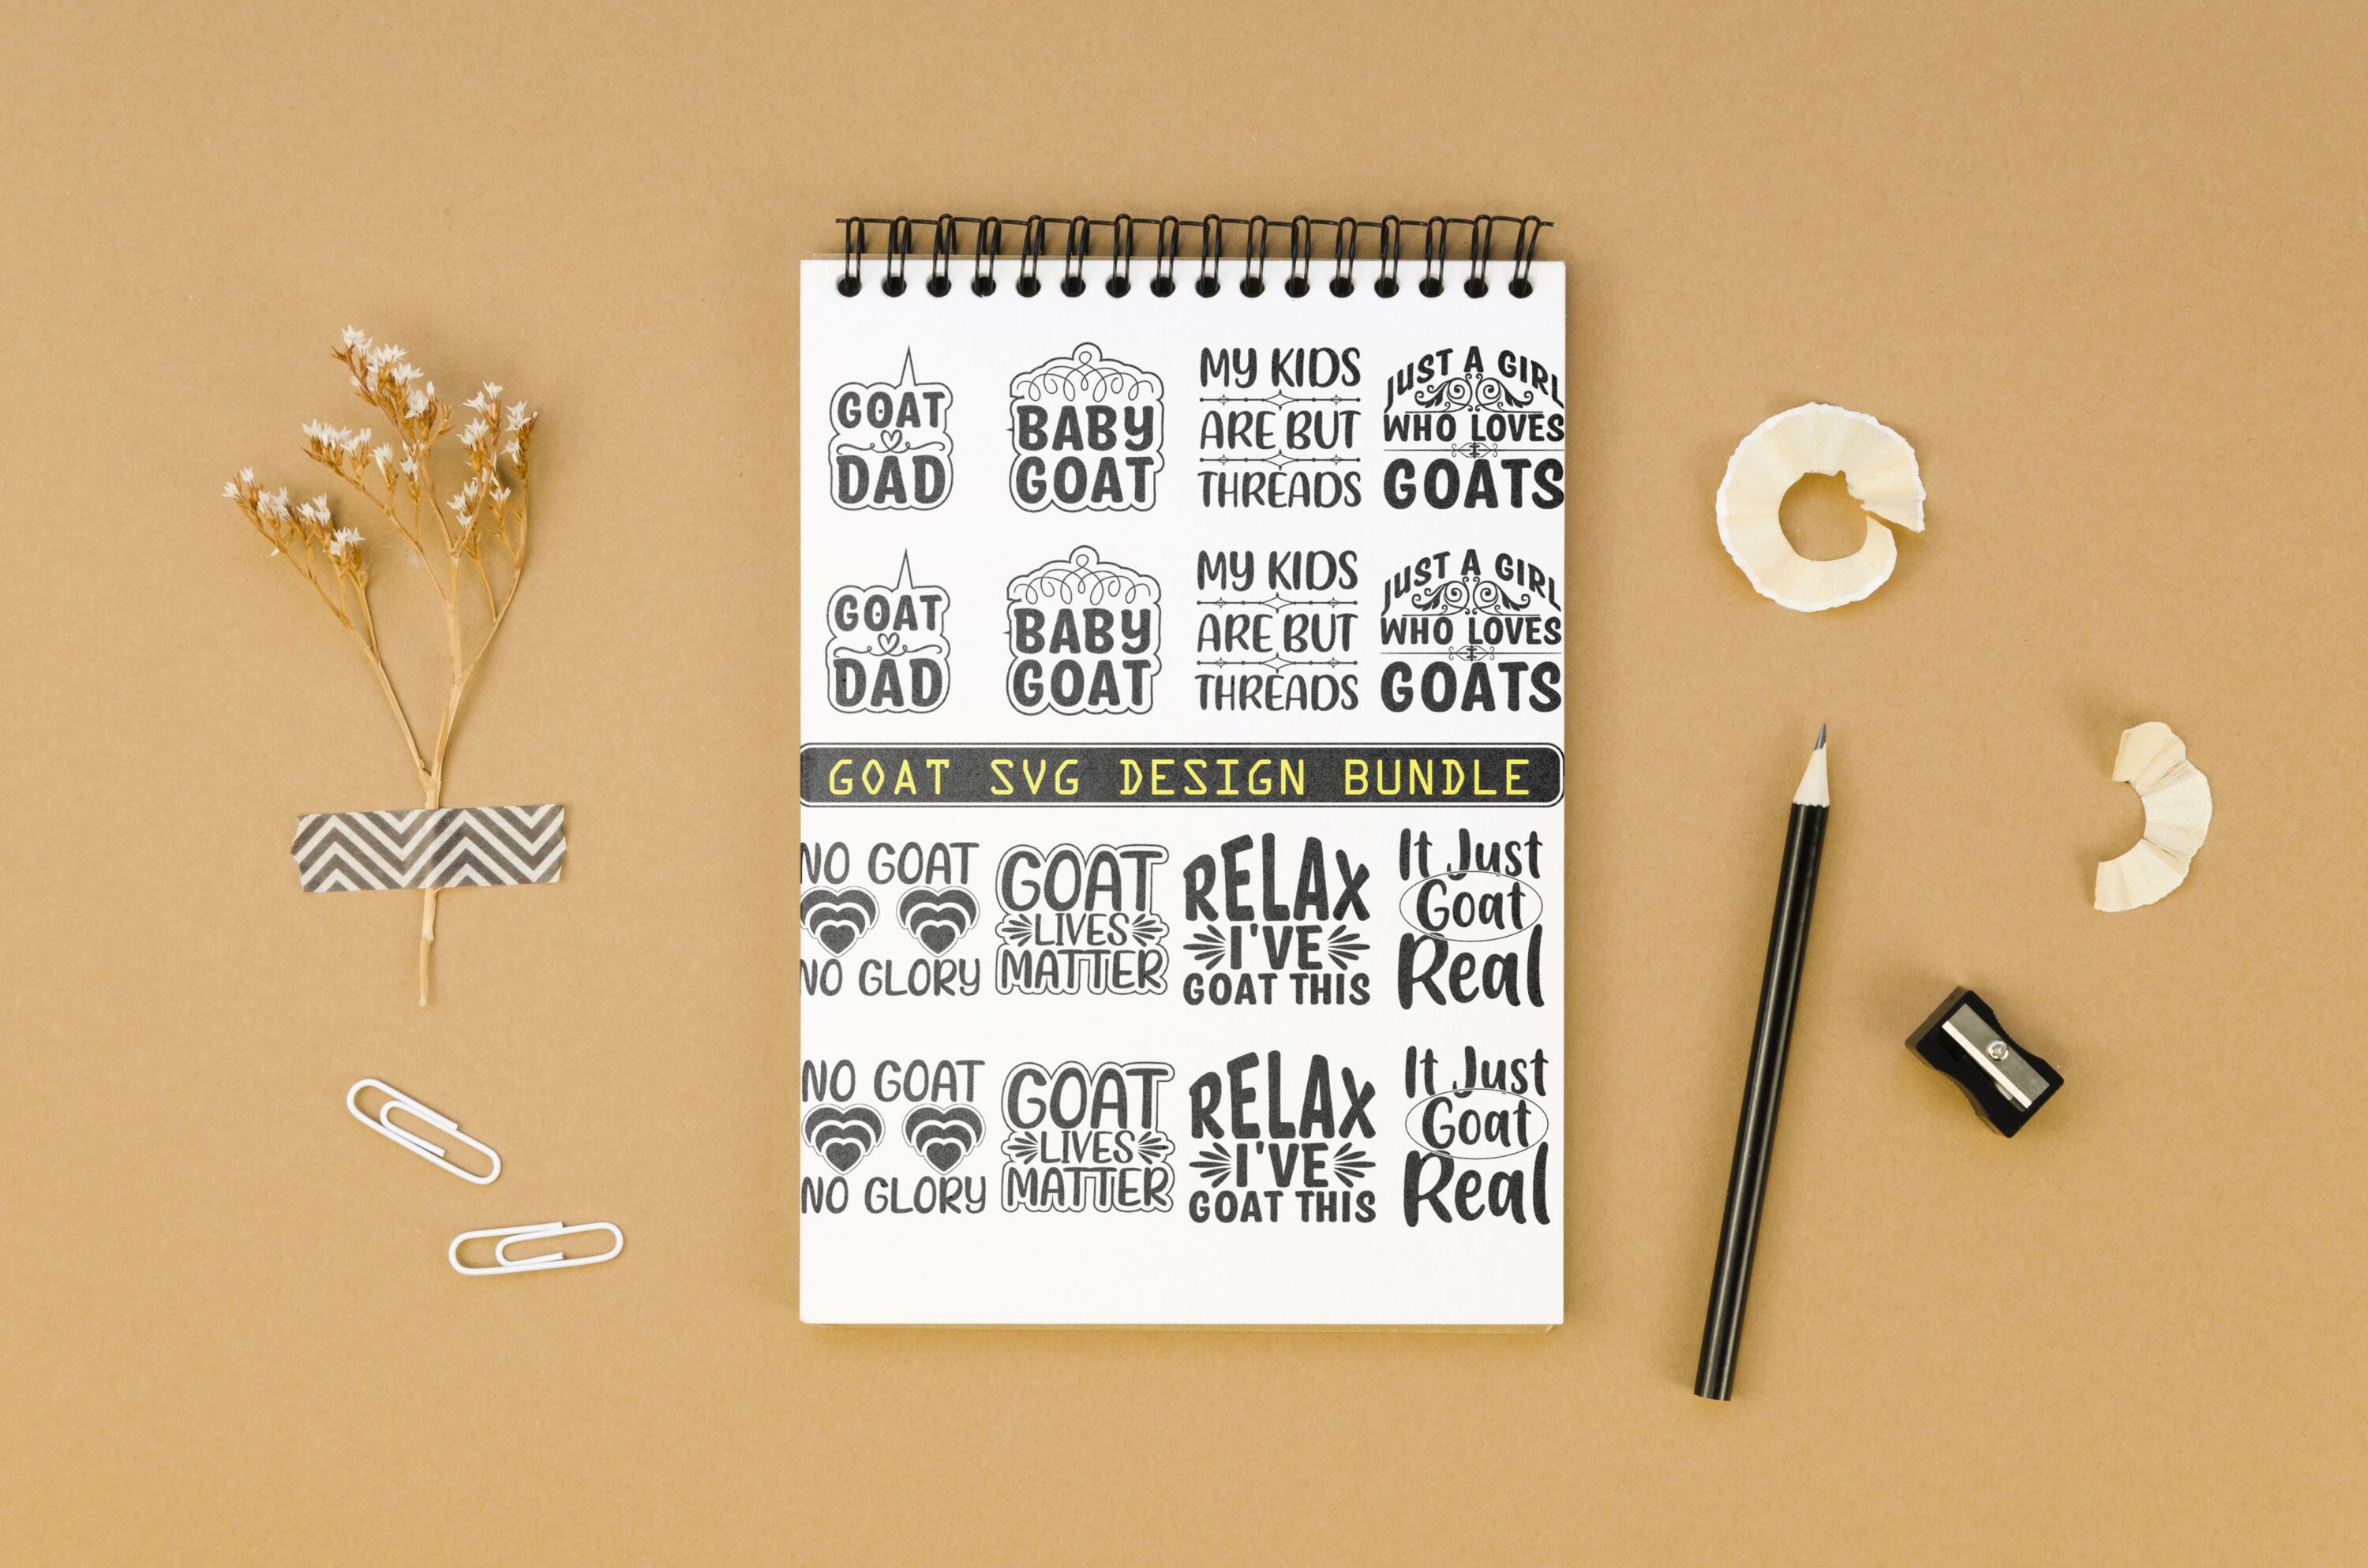 Goat SVG Design Bundle - notebook.